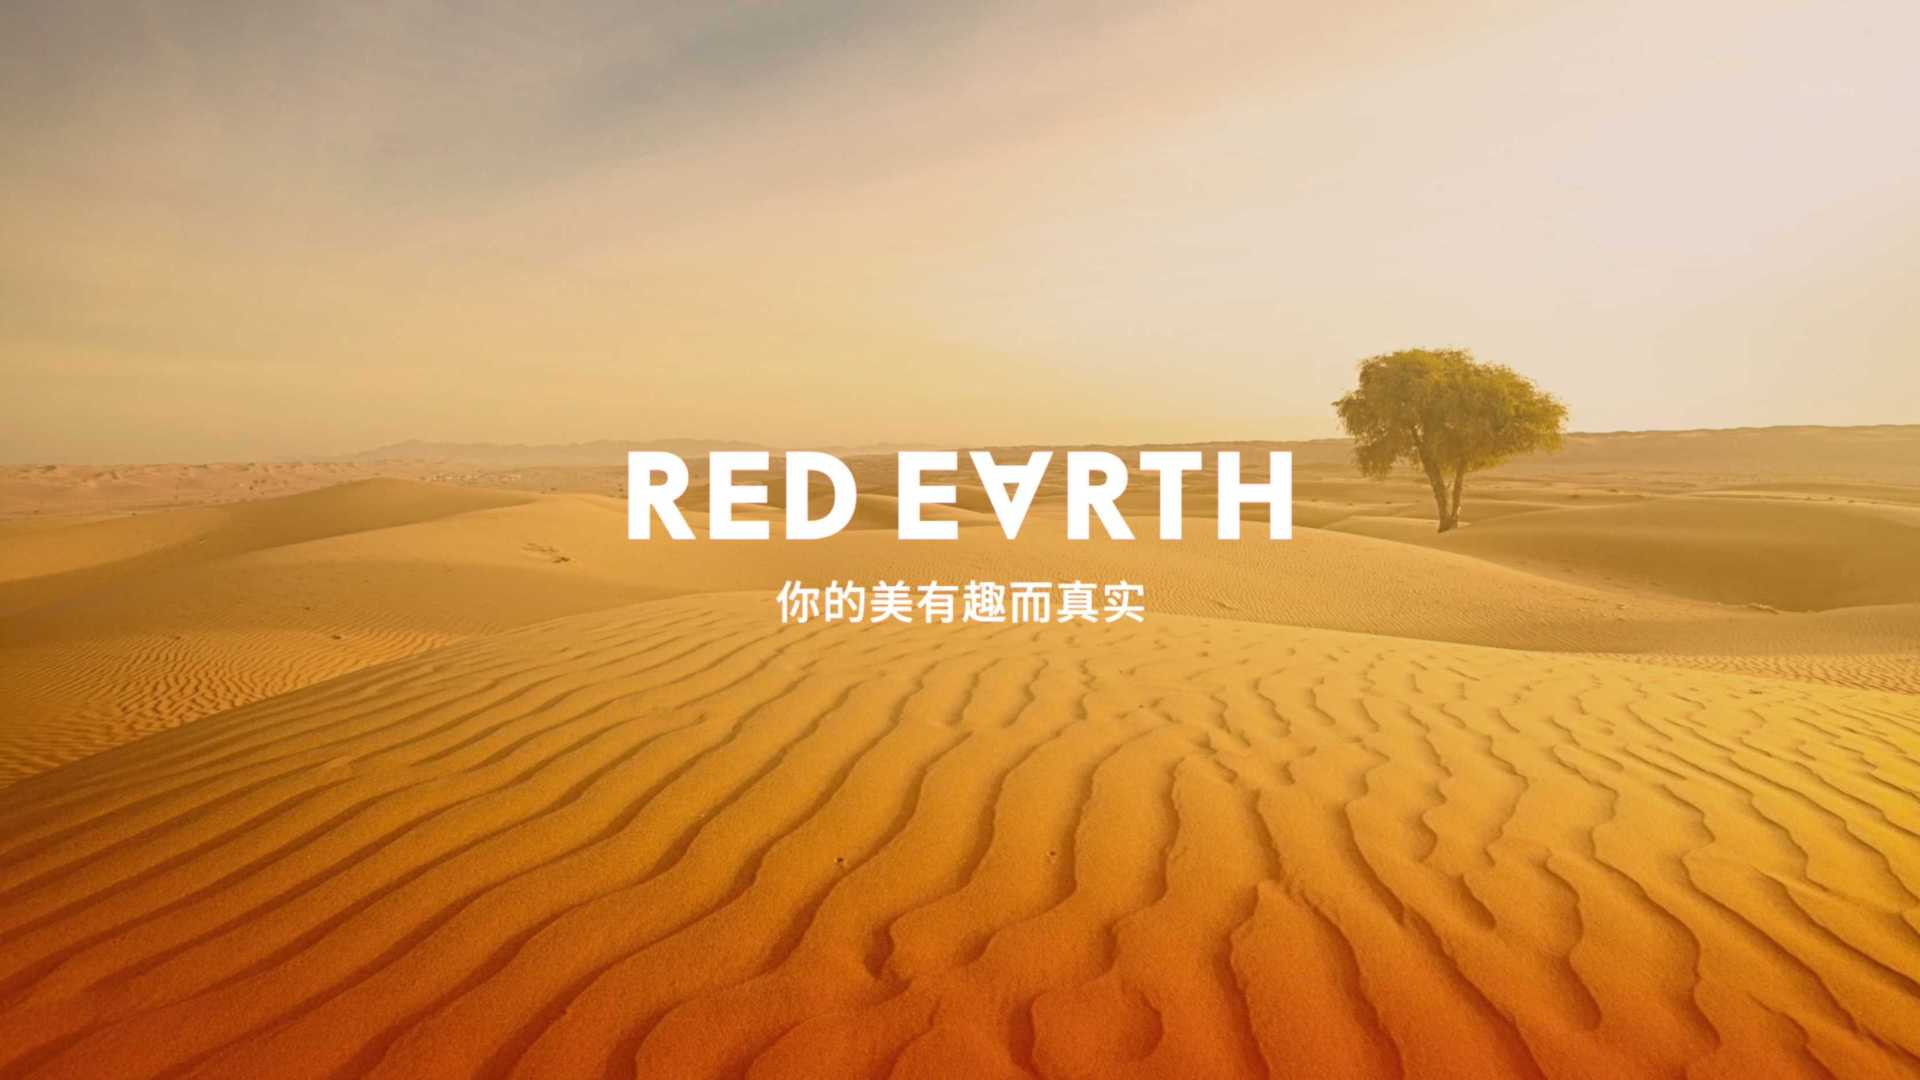 RED EARTH红地球 三角眉笔